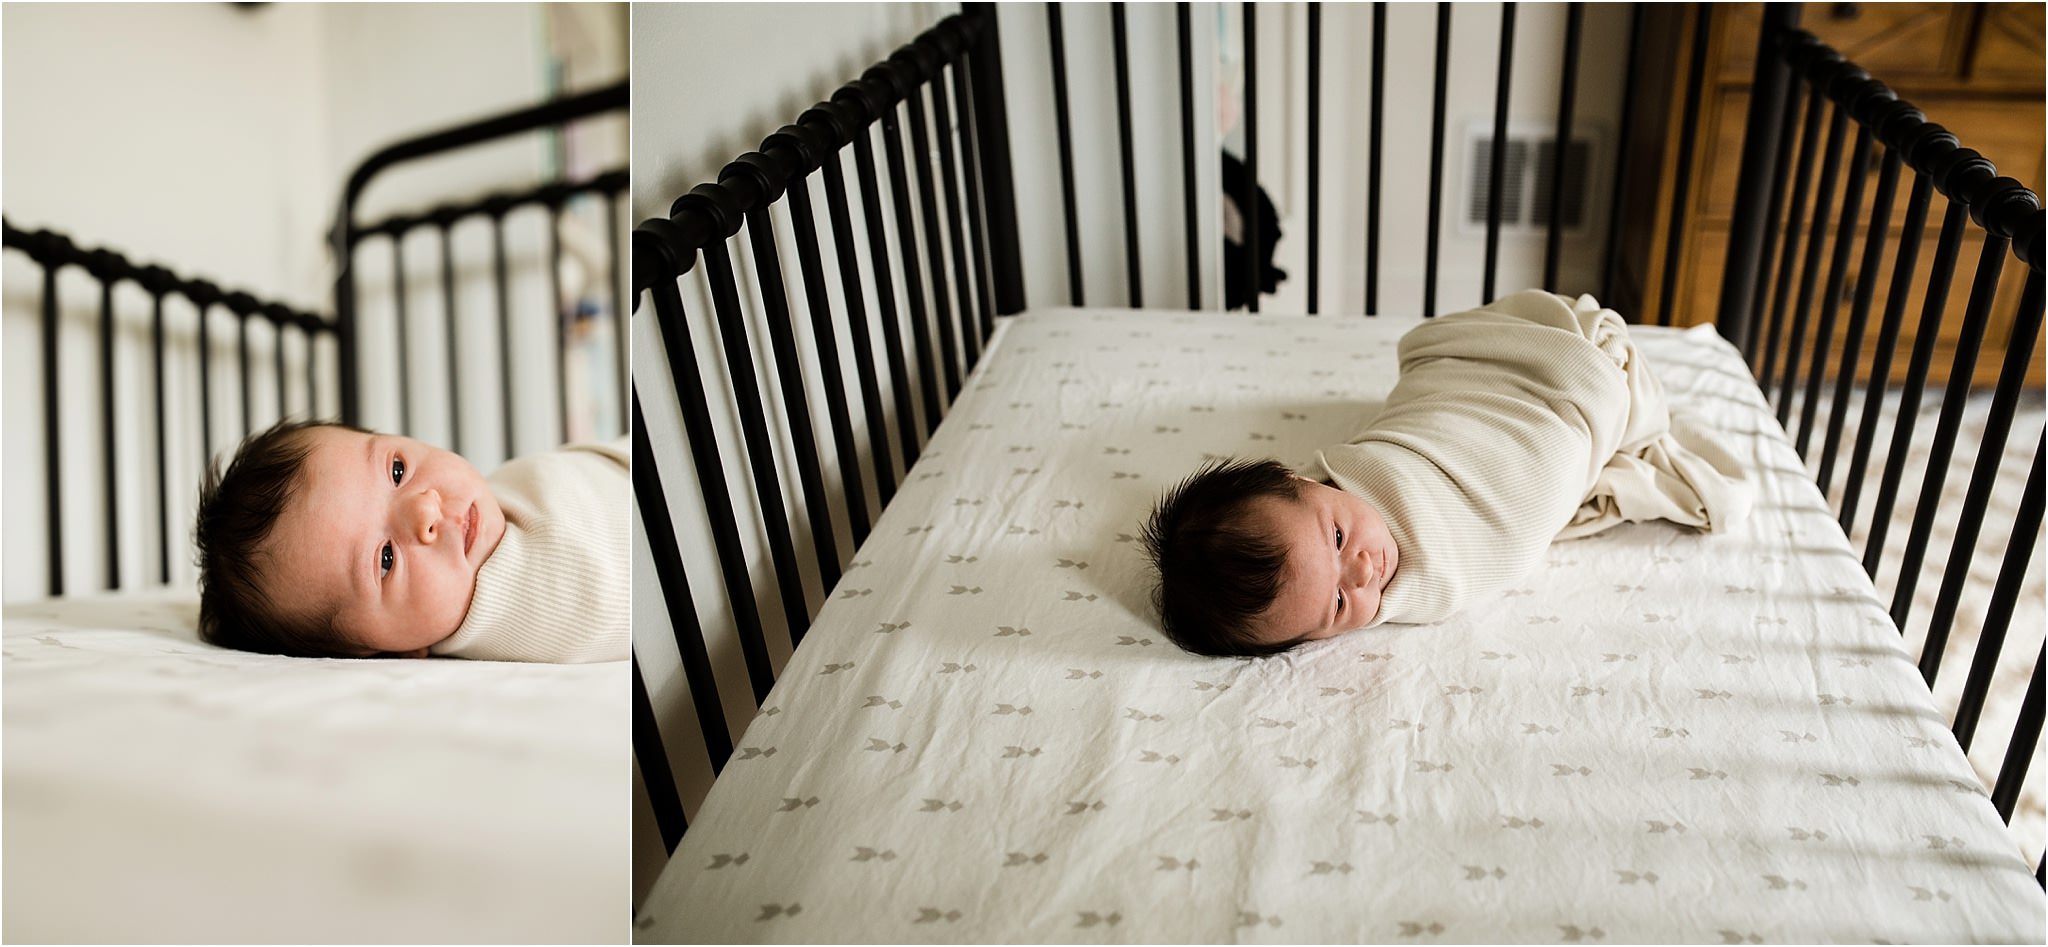 newborn photos in crib